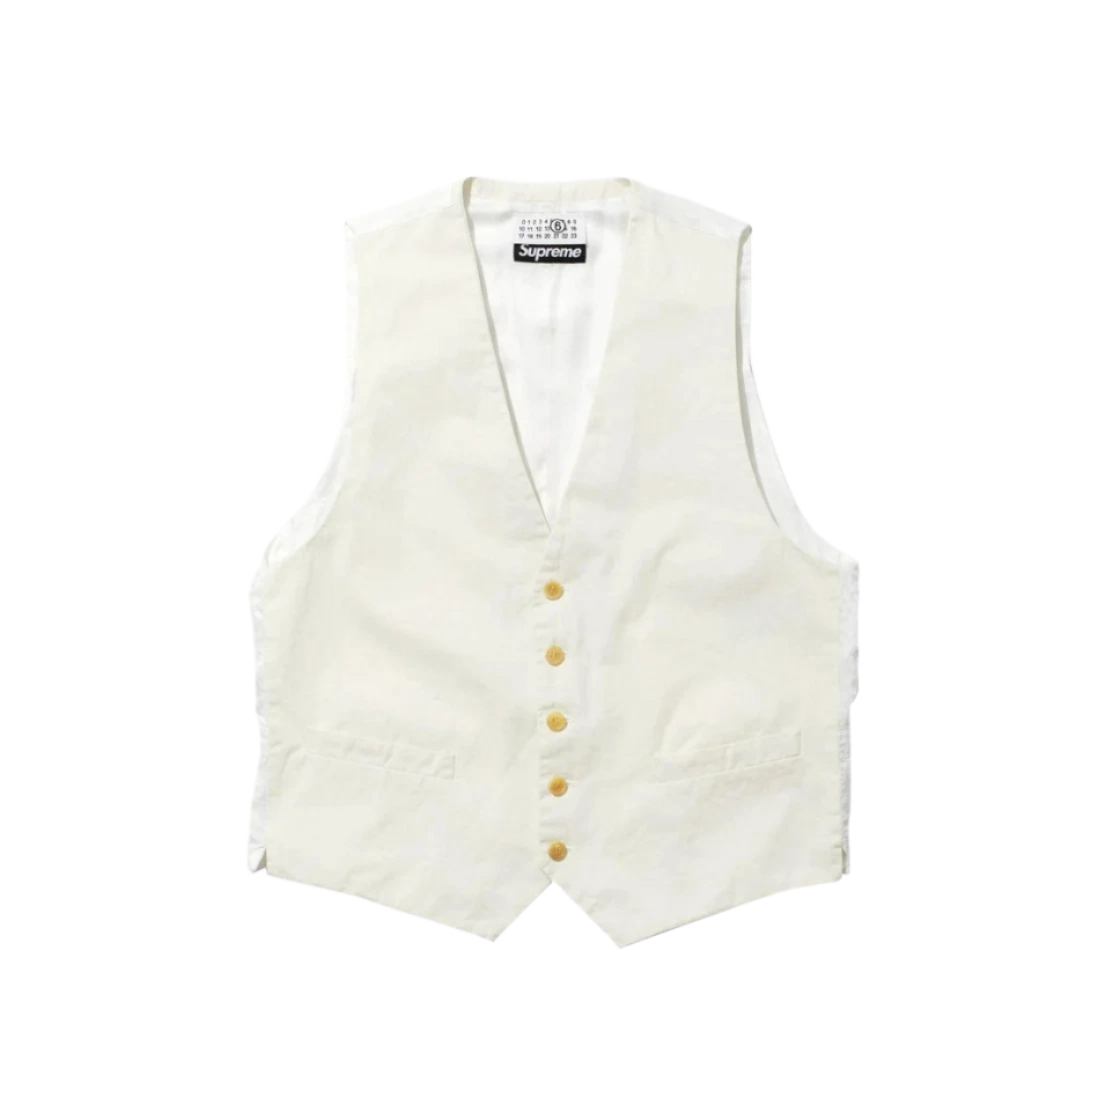 Supreme x MM6 Maison Margiela Washed Cotton Suit Vest Cream - 24SS